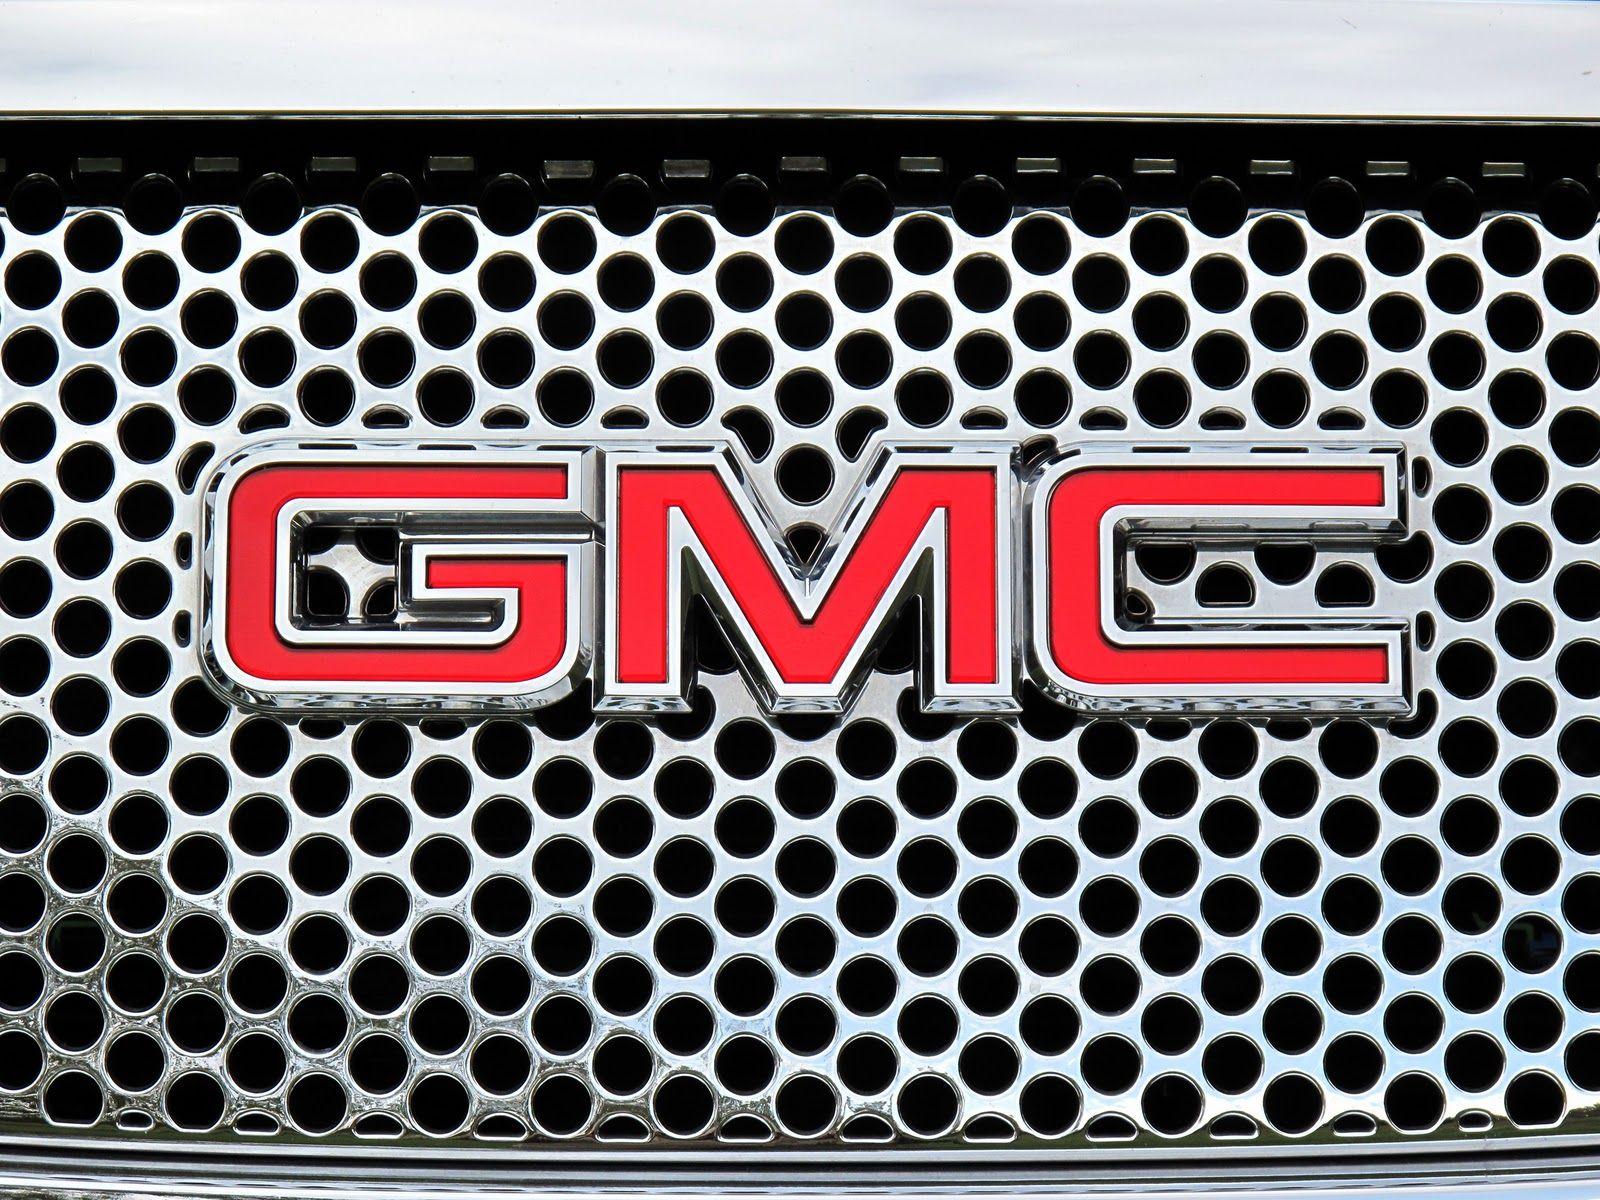 Red Auto Company Logo - GMC Logo, GMC Car Symbol Meaning and History. Car Brand Names.com